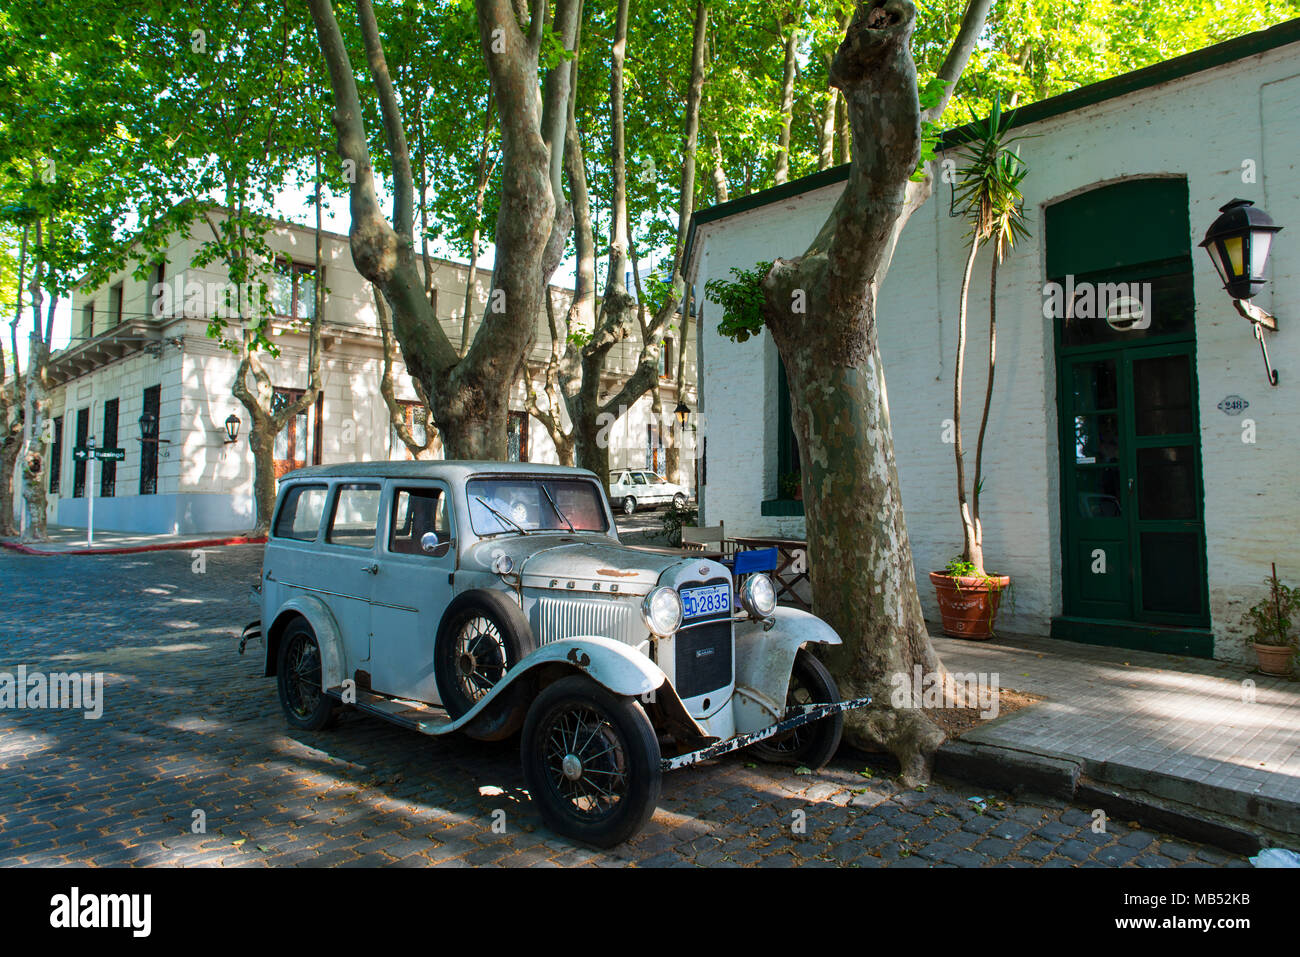 Oldtimer, camioneta Ford, en el centro de la ciudad, Colonia del Sacramento, Uruguay Foto de stock